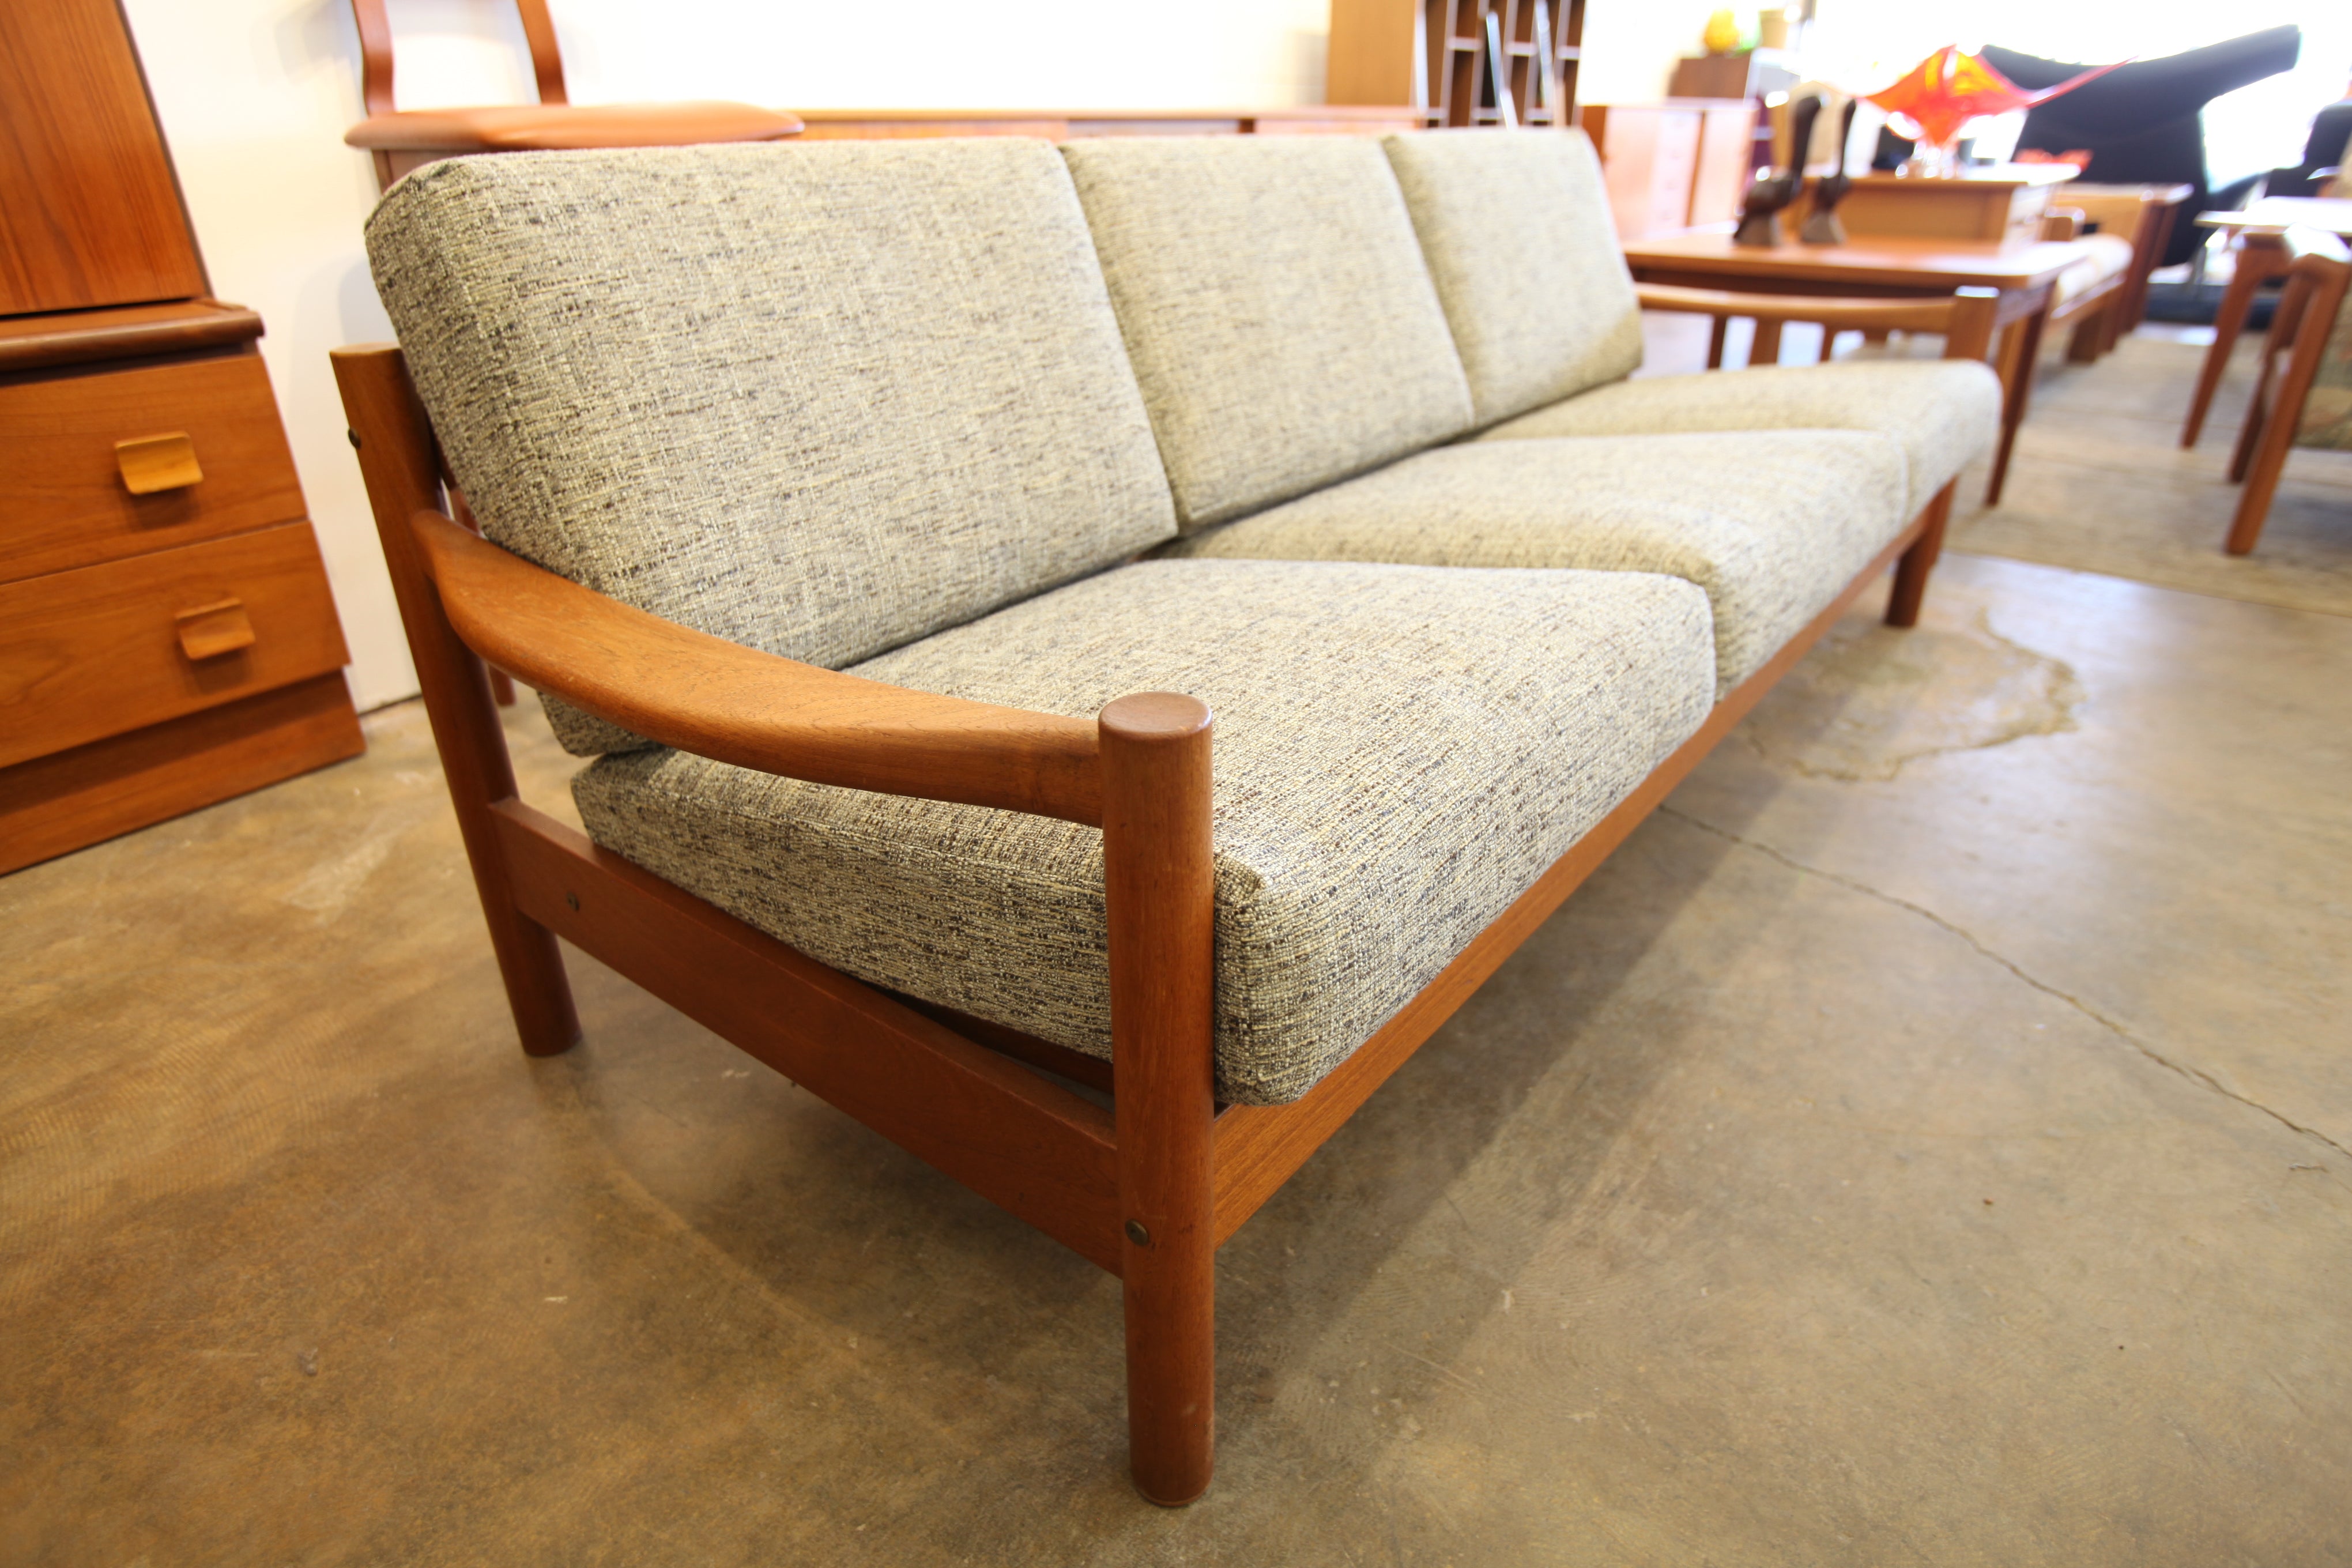 Beautiful Vintage Danish Teak 3 Seater Sofa w/ New Fabric (79.5"W x 29.5"D x 28"H)